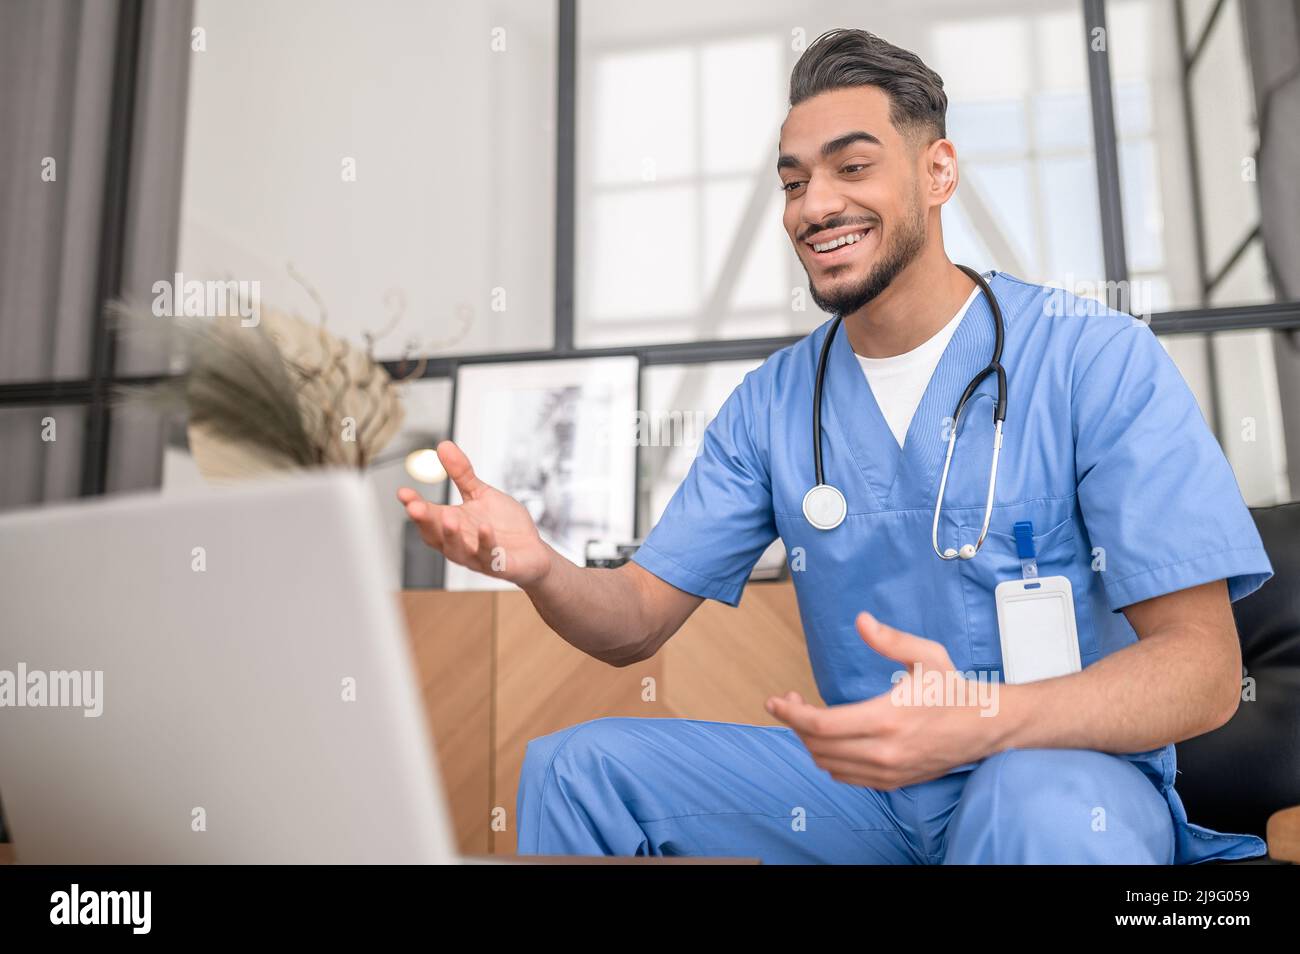 Mitarbeiter im Gesundheitswesen, der online mit seinem Patienten kommuniziert Stockfoto